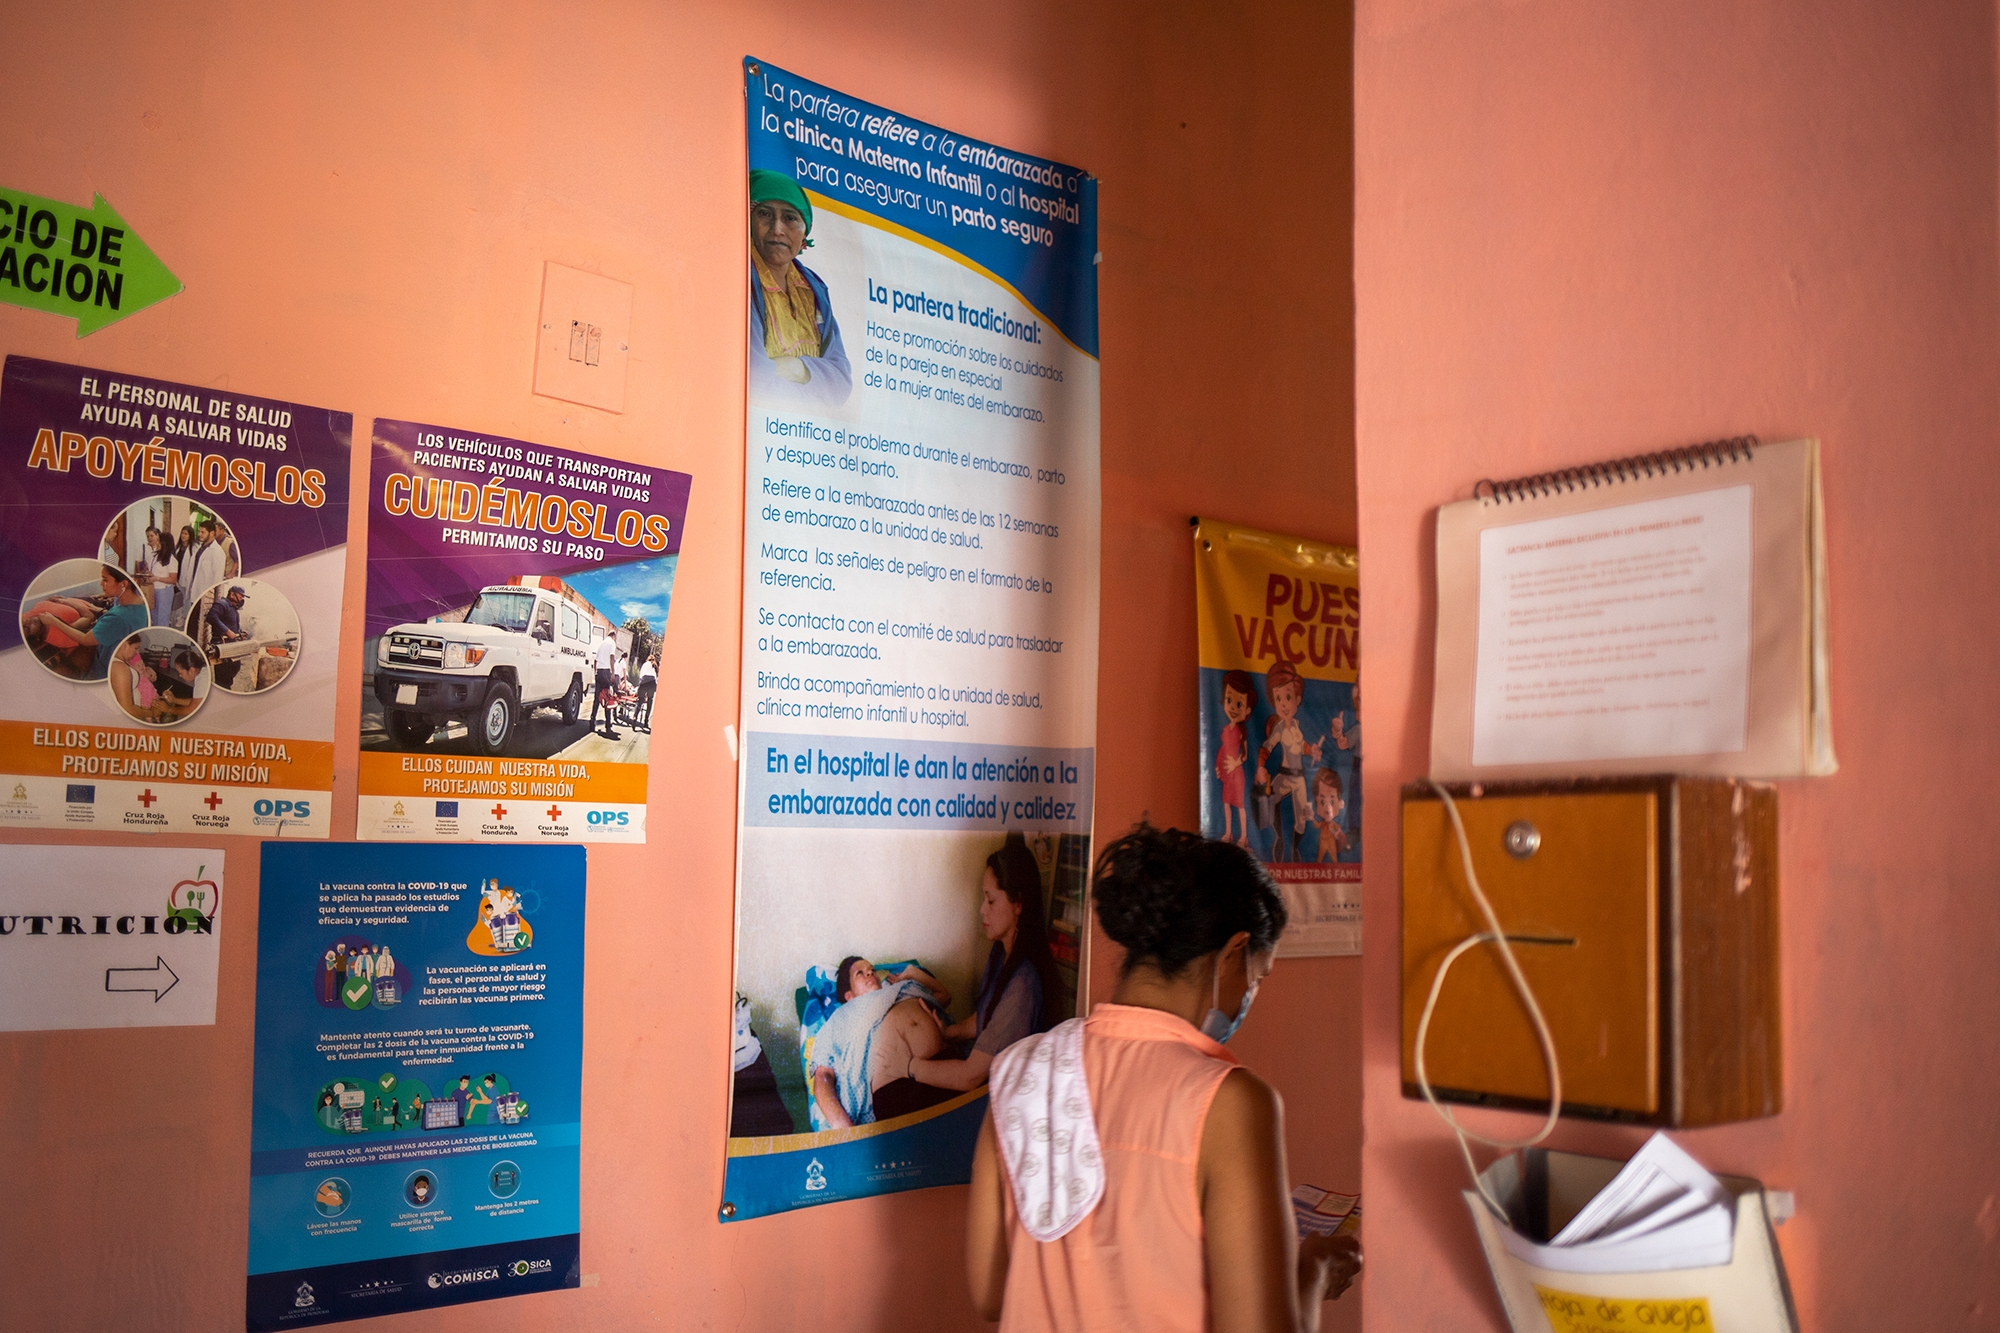 Centro Integral de Salud El Guante | mortalidad infantil | significado | materna | en Honduras | en Honduras 2020 | 2021 | "mortalidad materna en honduras" | mortalidad infantil